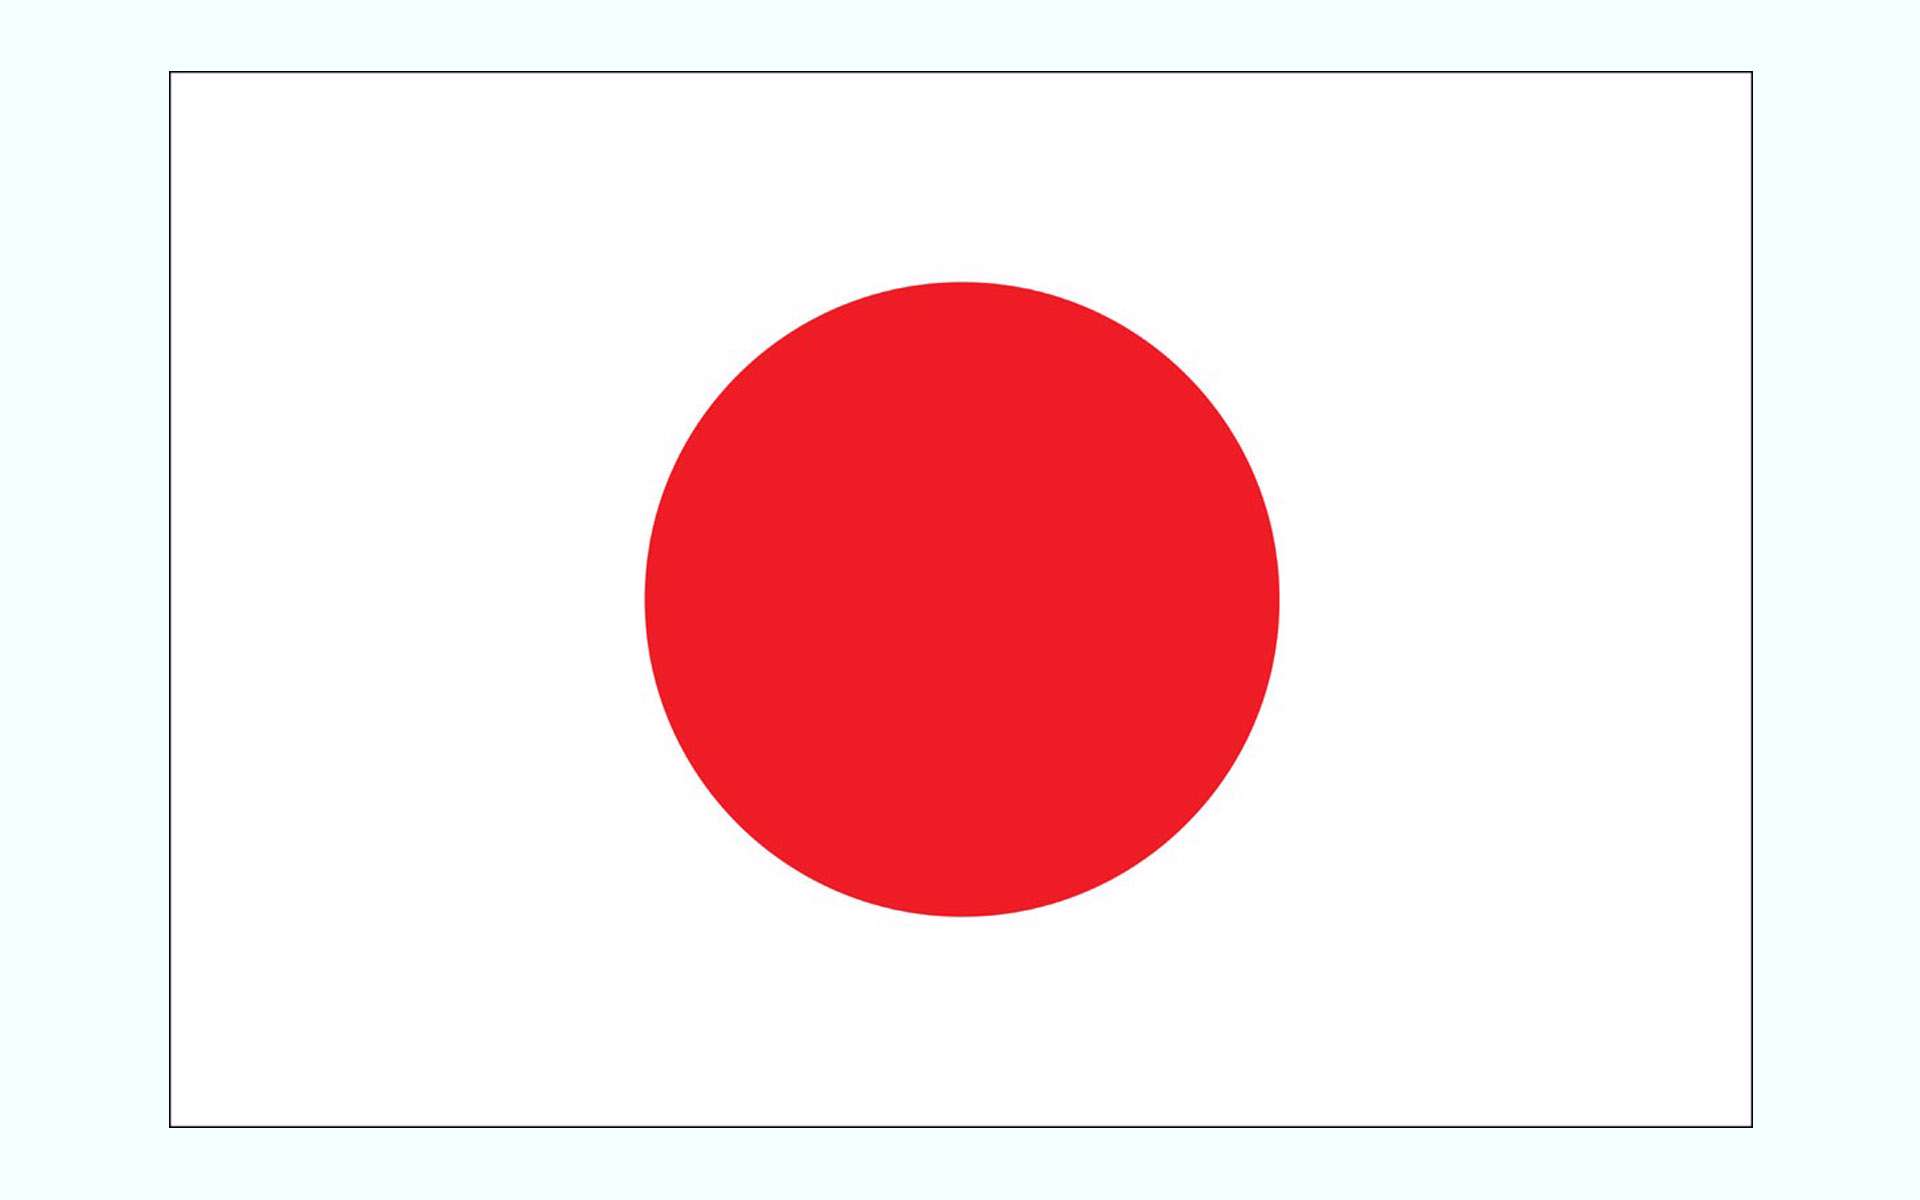 دانلود عکس پرچم کشور چین